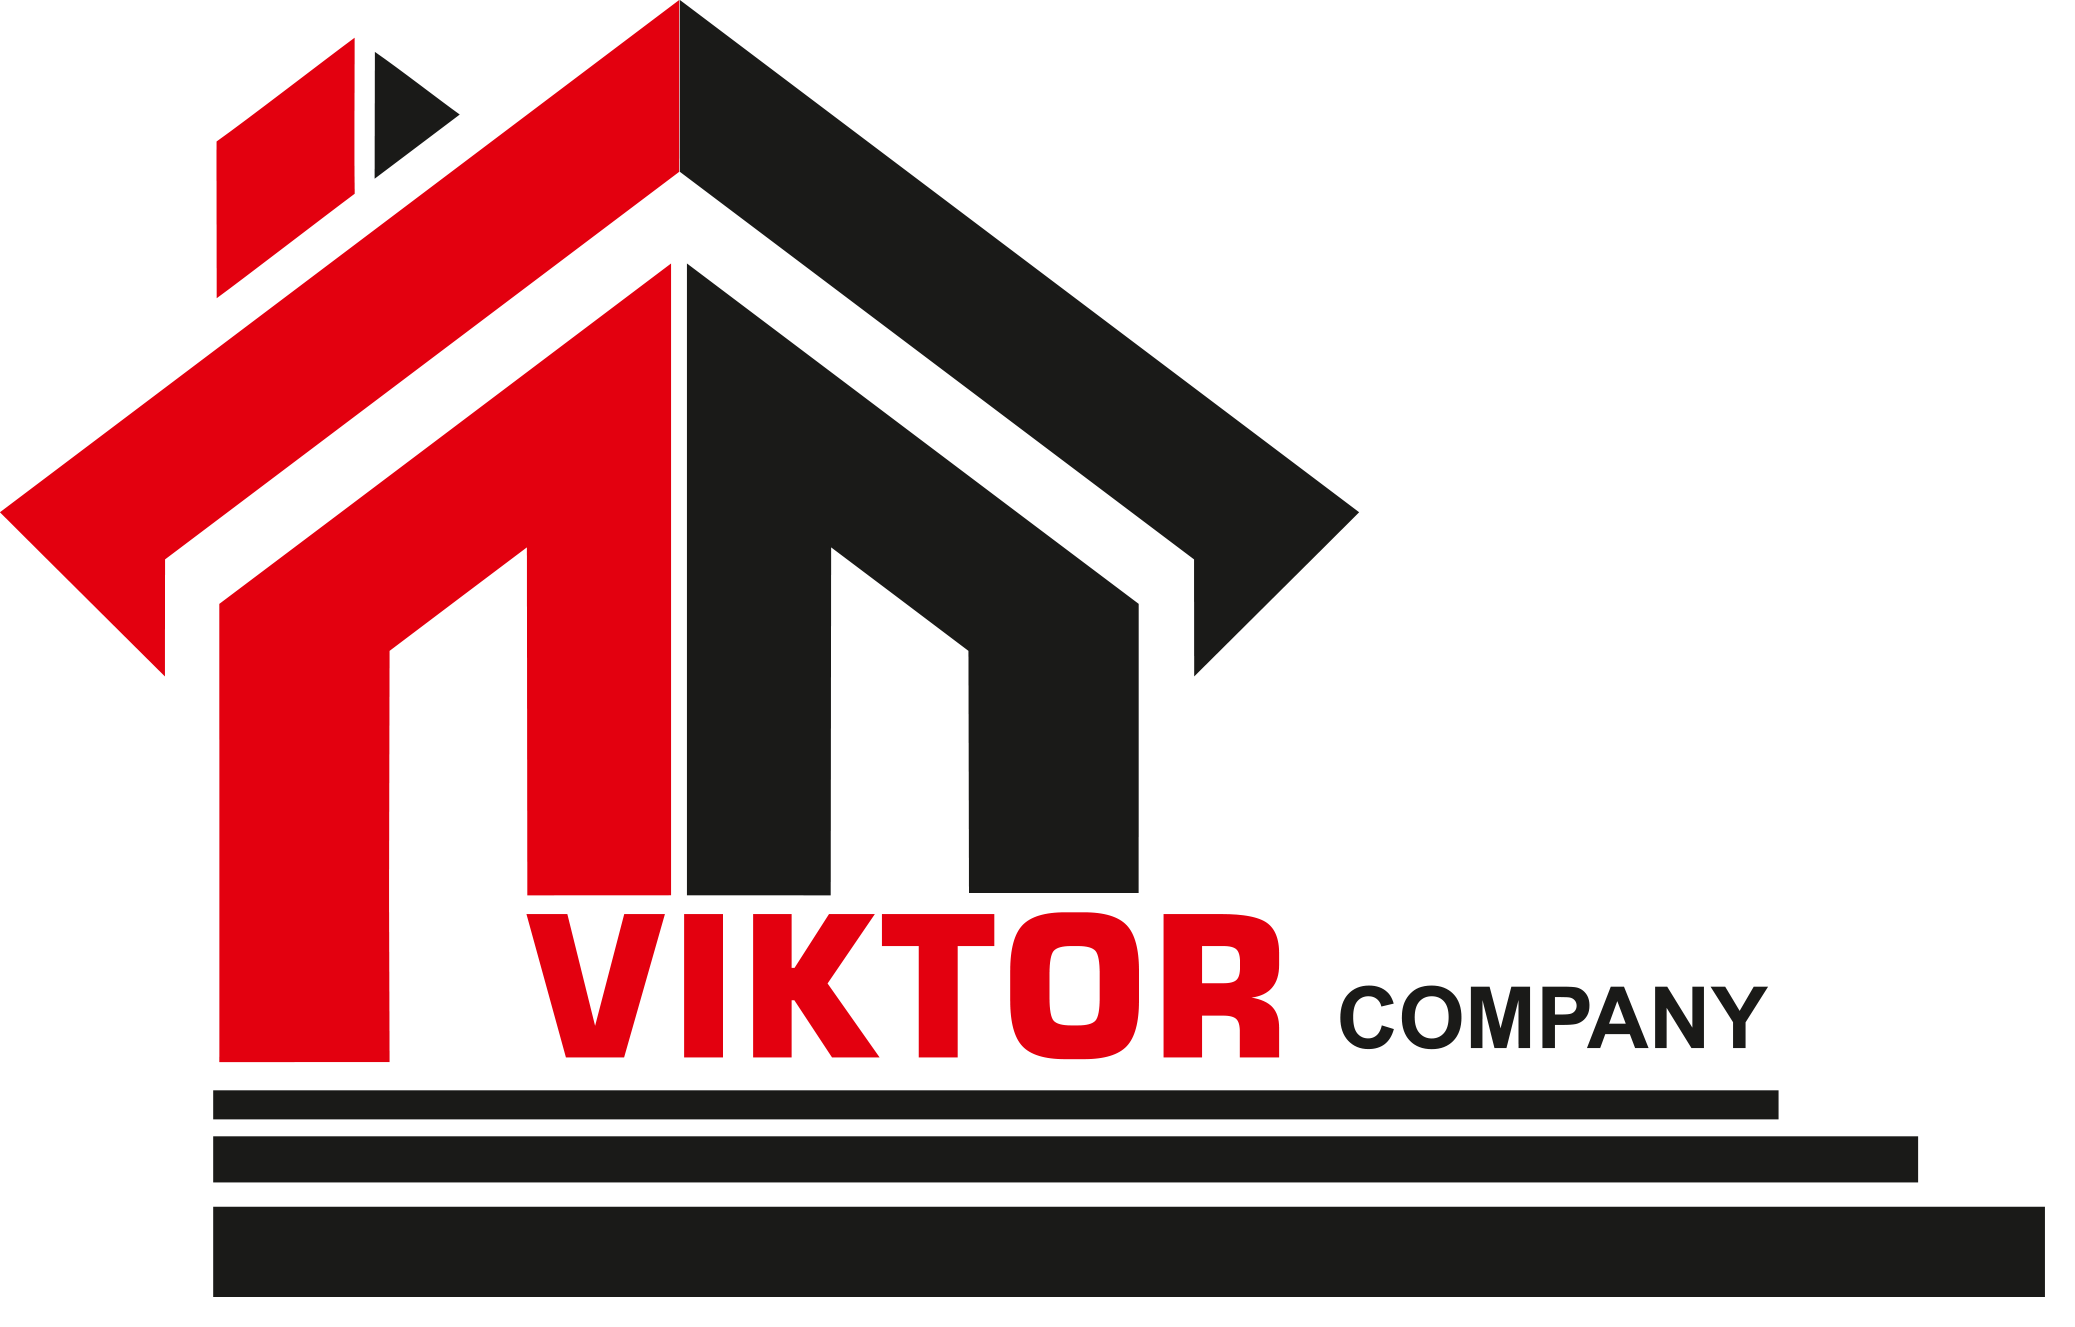 Viktor company